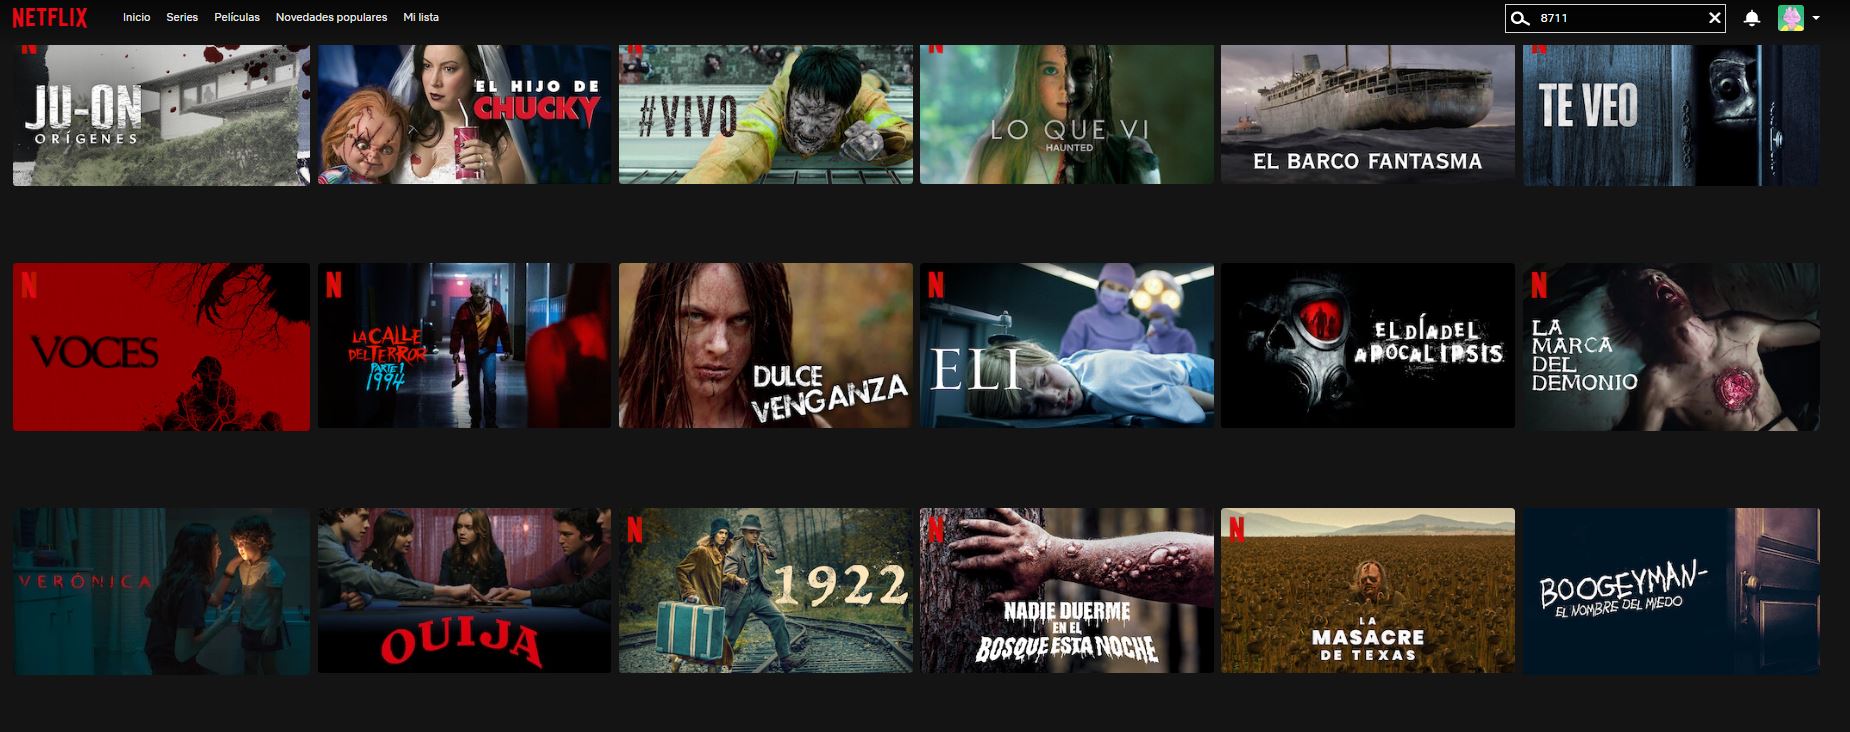 Codigos Netflix, PDF, Películas de terror